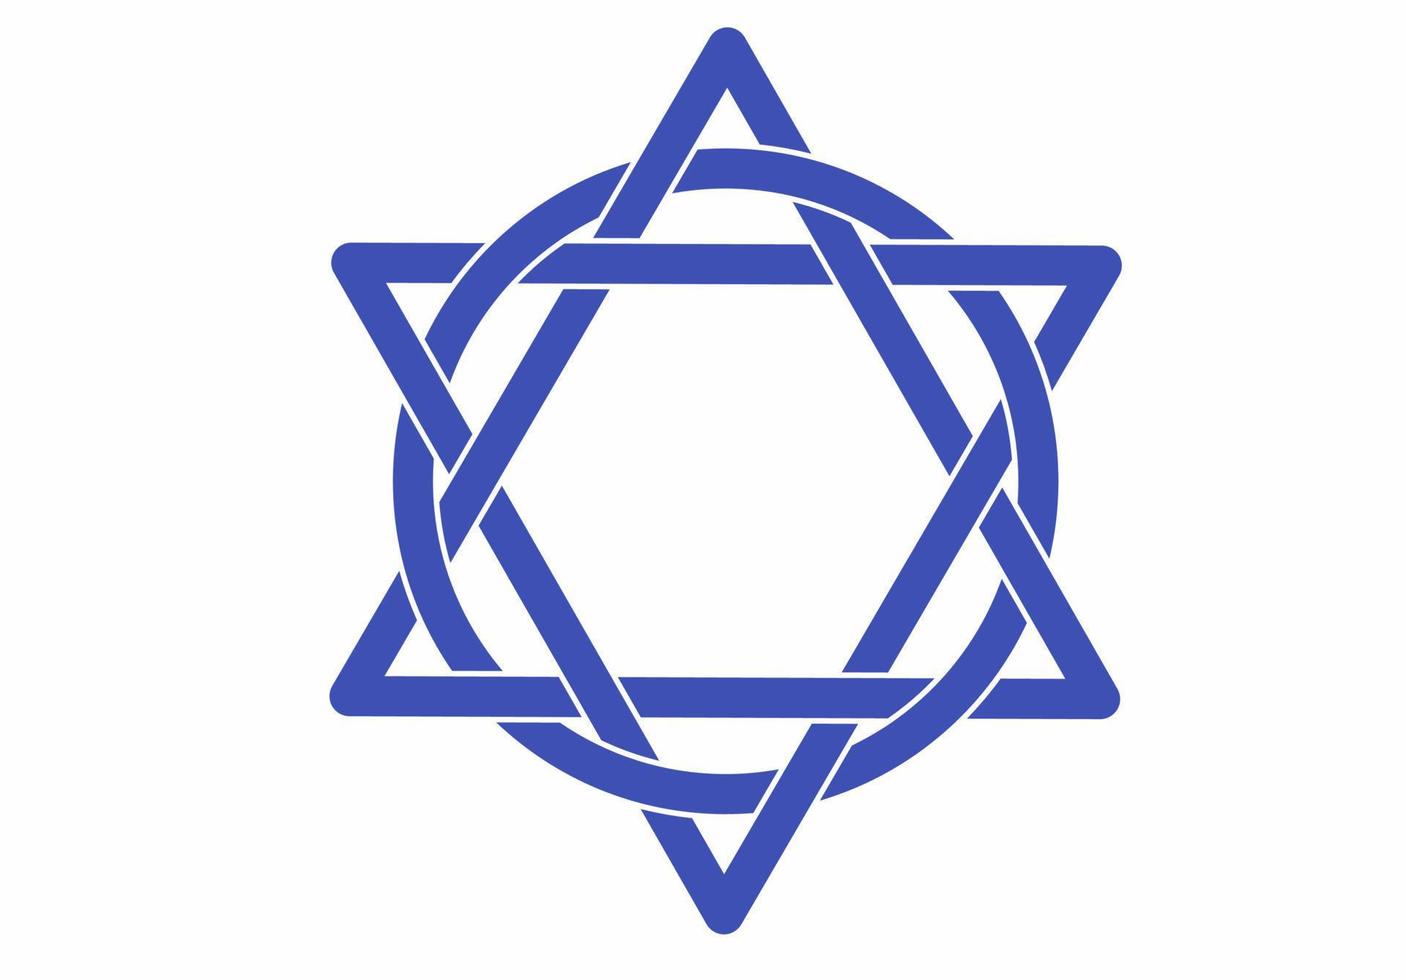 estrela de Davi antigo símbolo judaico isolado no fundo branco vetor